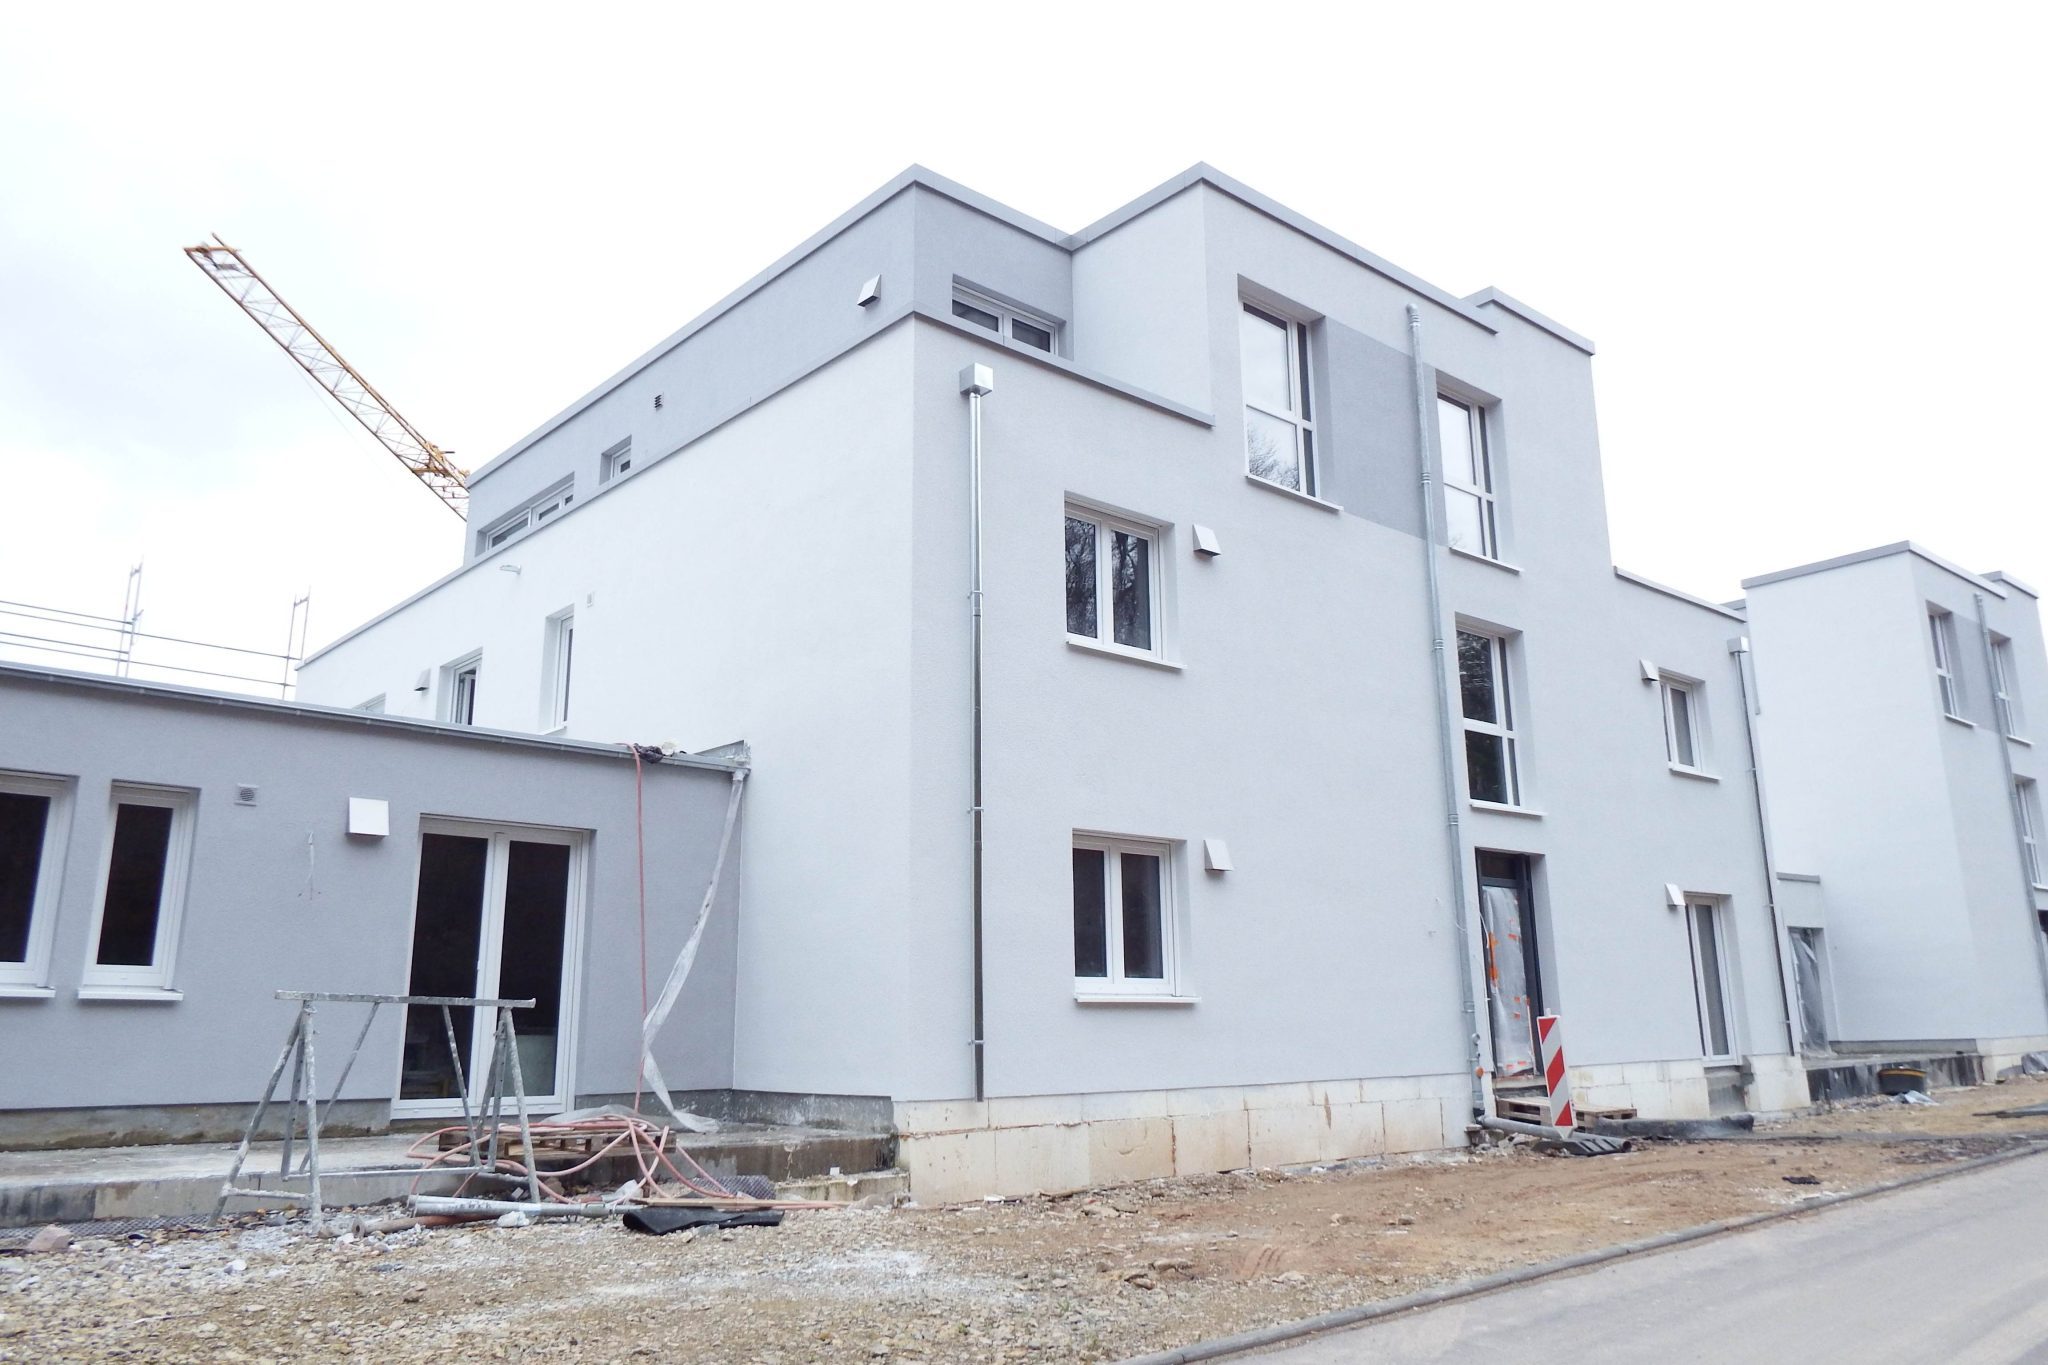 Volksbank Trier Immobilien GmbH - Immobilienangebot - Trier - Etagenwohnung - Kurz vor der Fertigstellung - Exklusives Wohnen mit Aussicht auf Trier in Waldrandlage